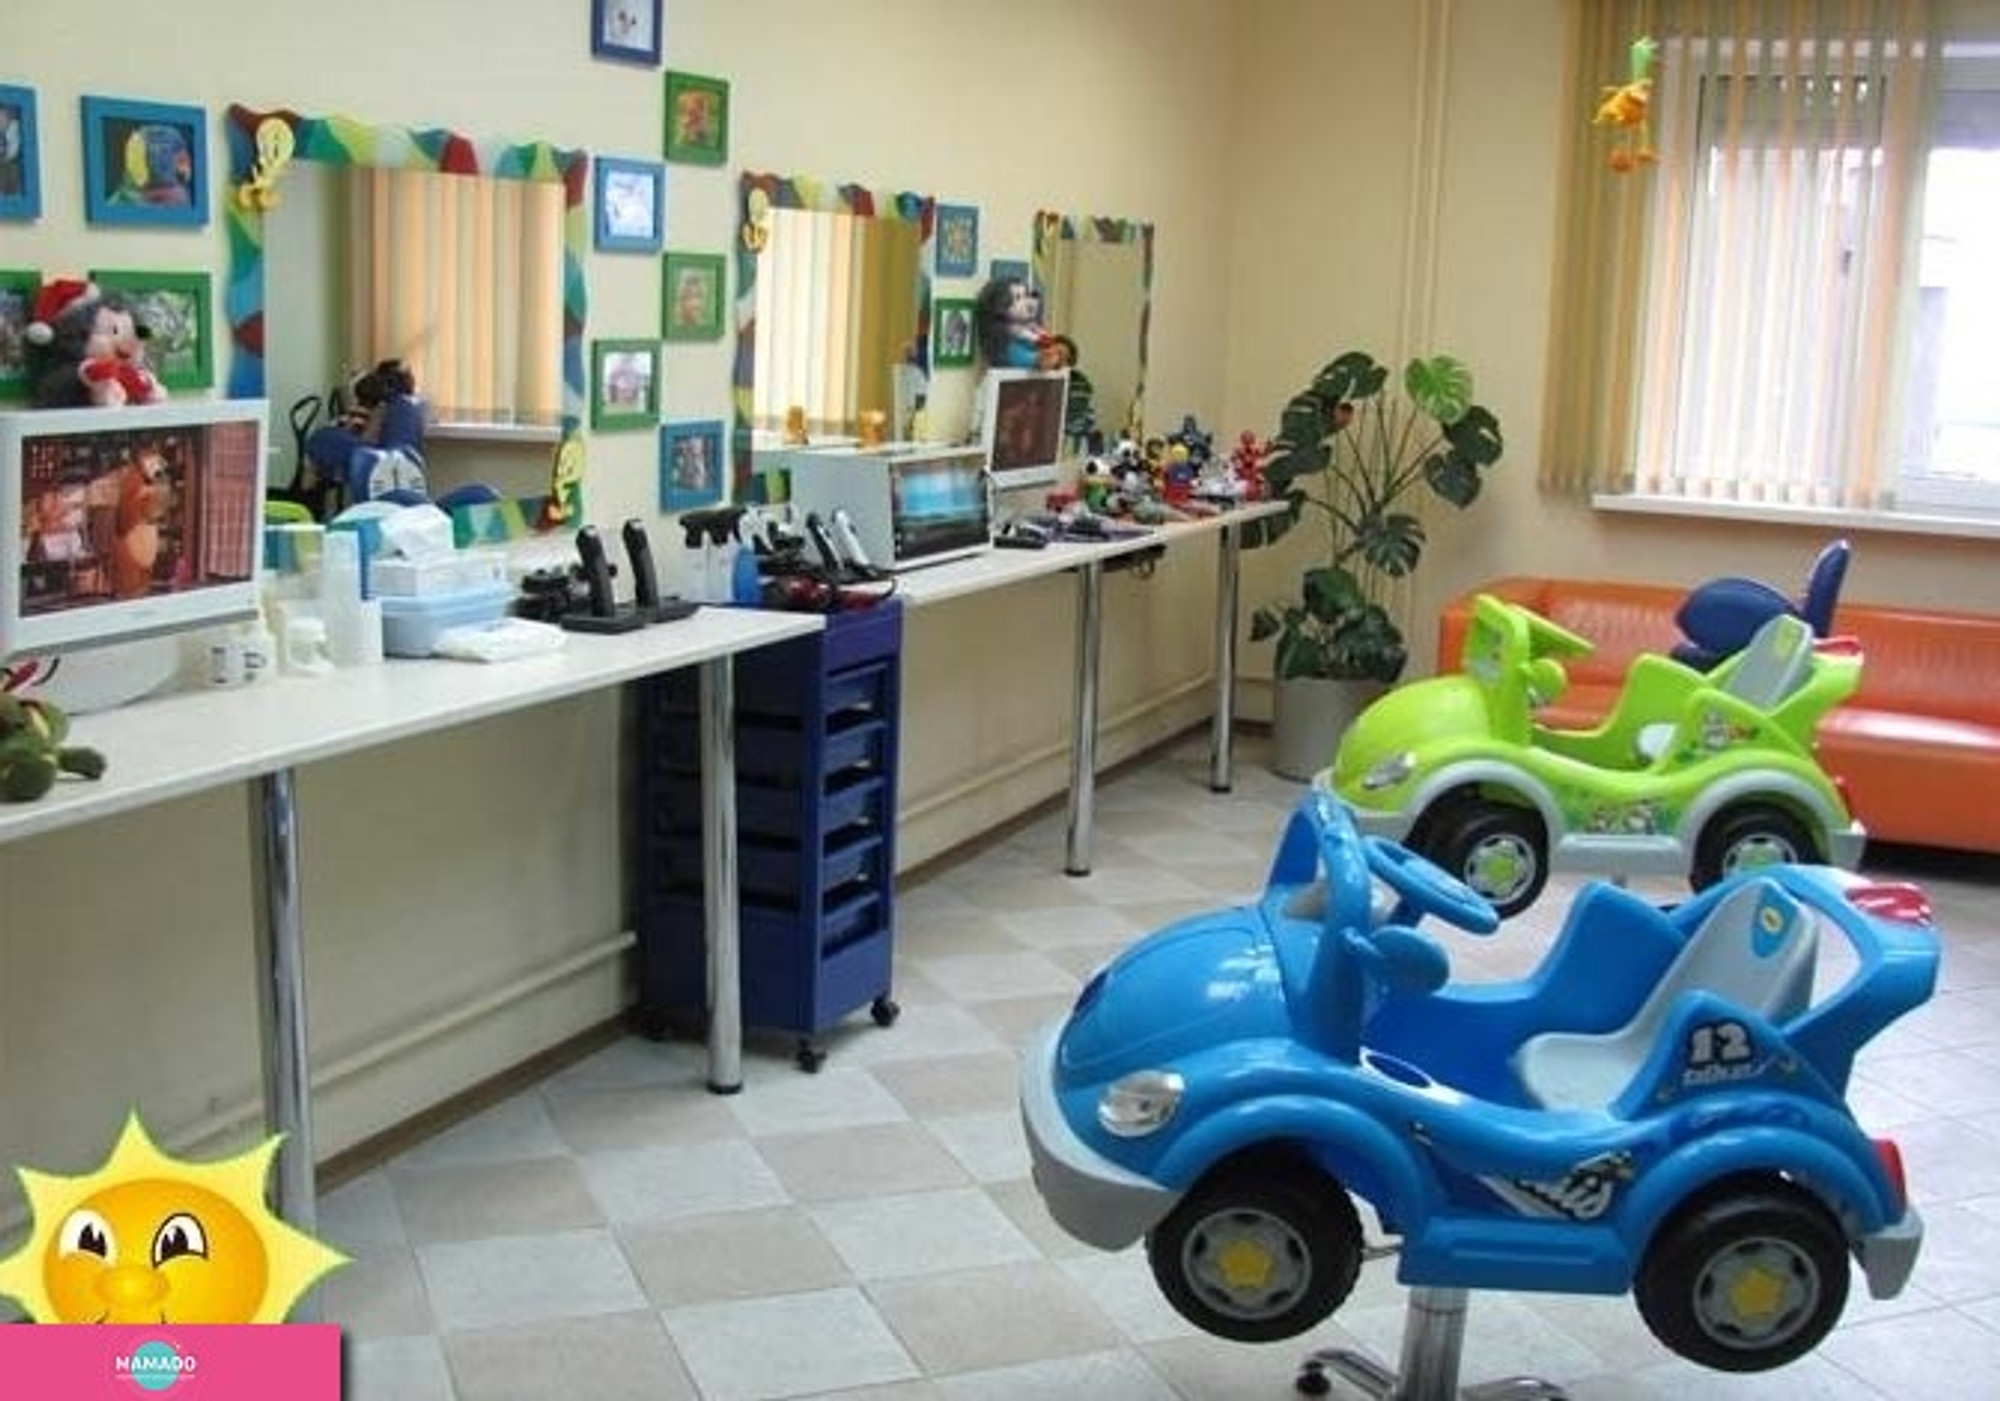 "Ежик", детская парикмахерская в Горском микрорайоне, Новосибирск 